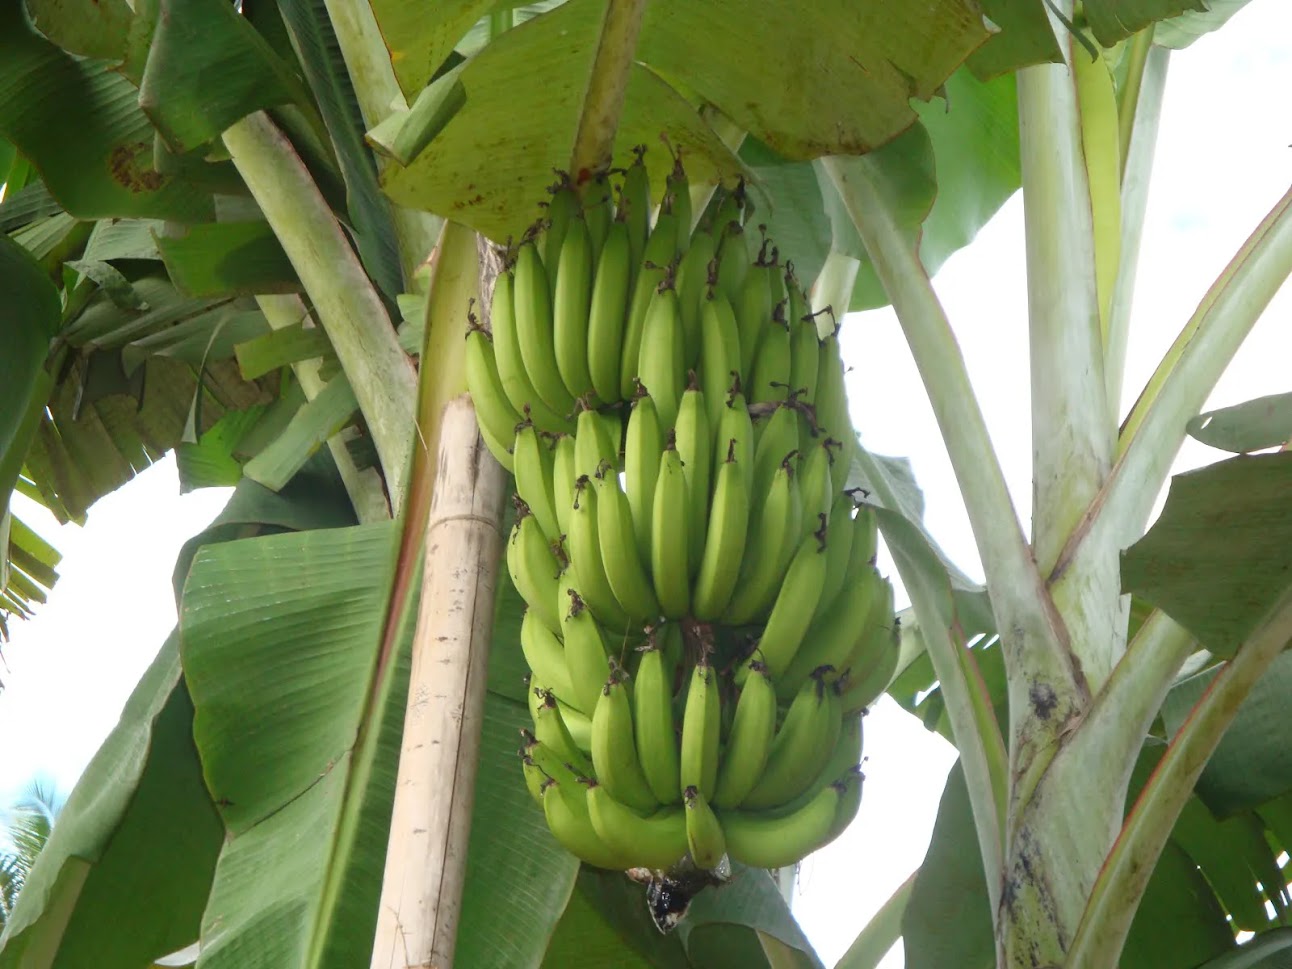 bibit pohon pisang rojo bulu mudah sekali cepat berbuahnya berkualitas super Papua Barat Daya